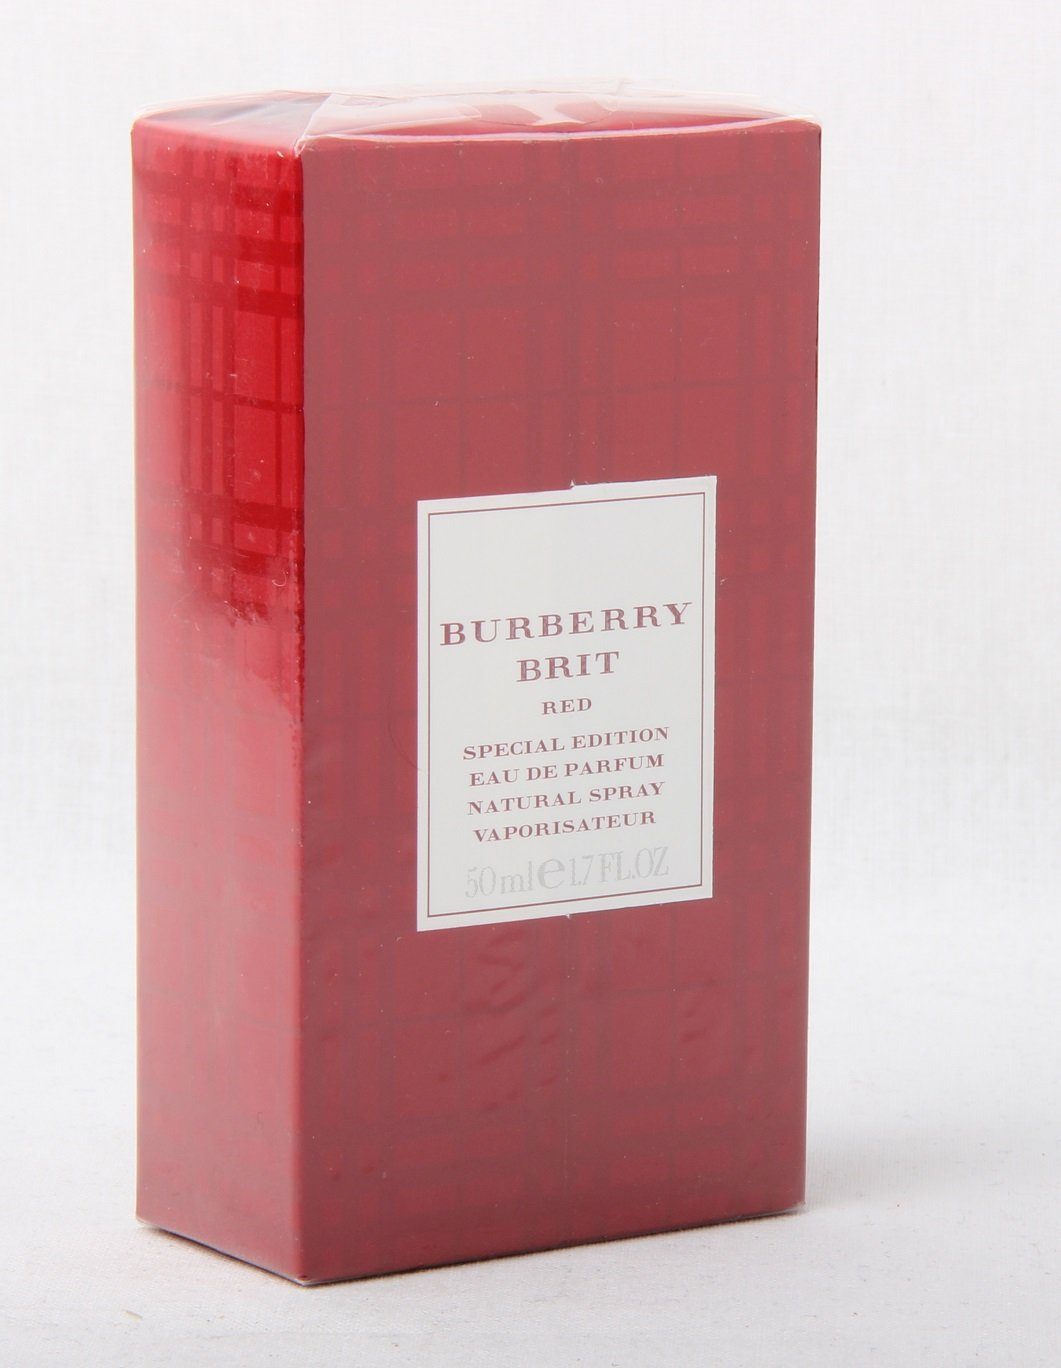 BURBERRY Eau de Parfum Burberry Brit Red Special Edition Eau de Parfum Spray 50ml